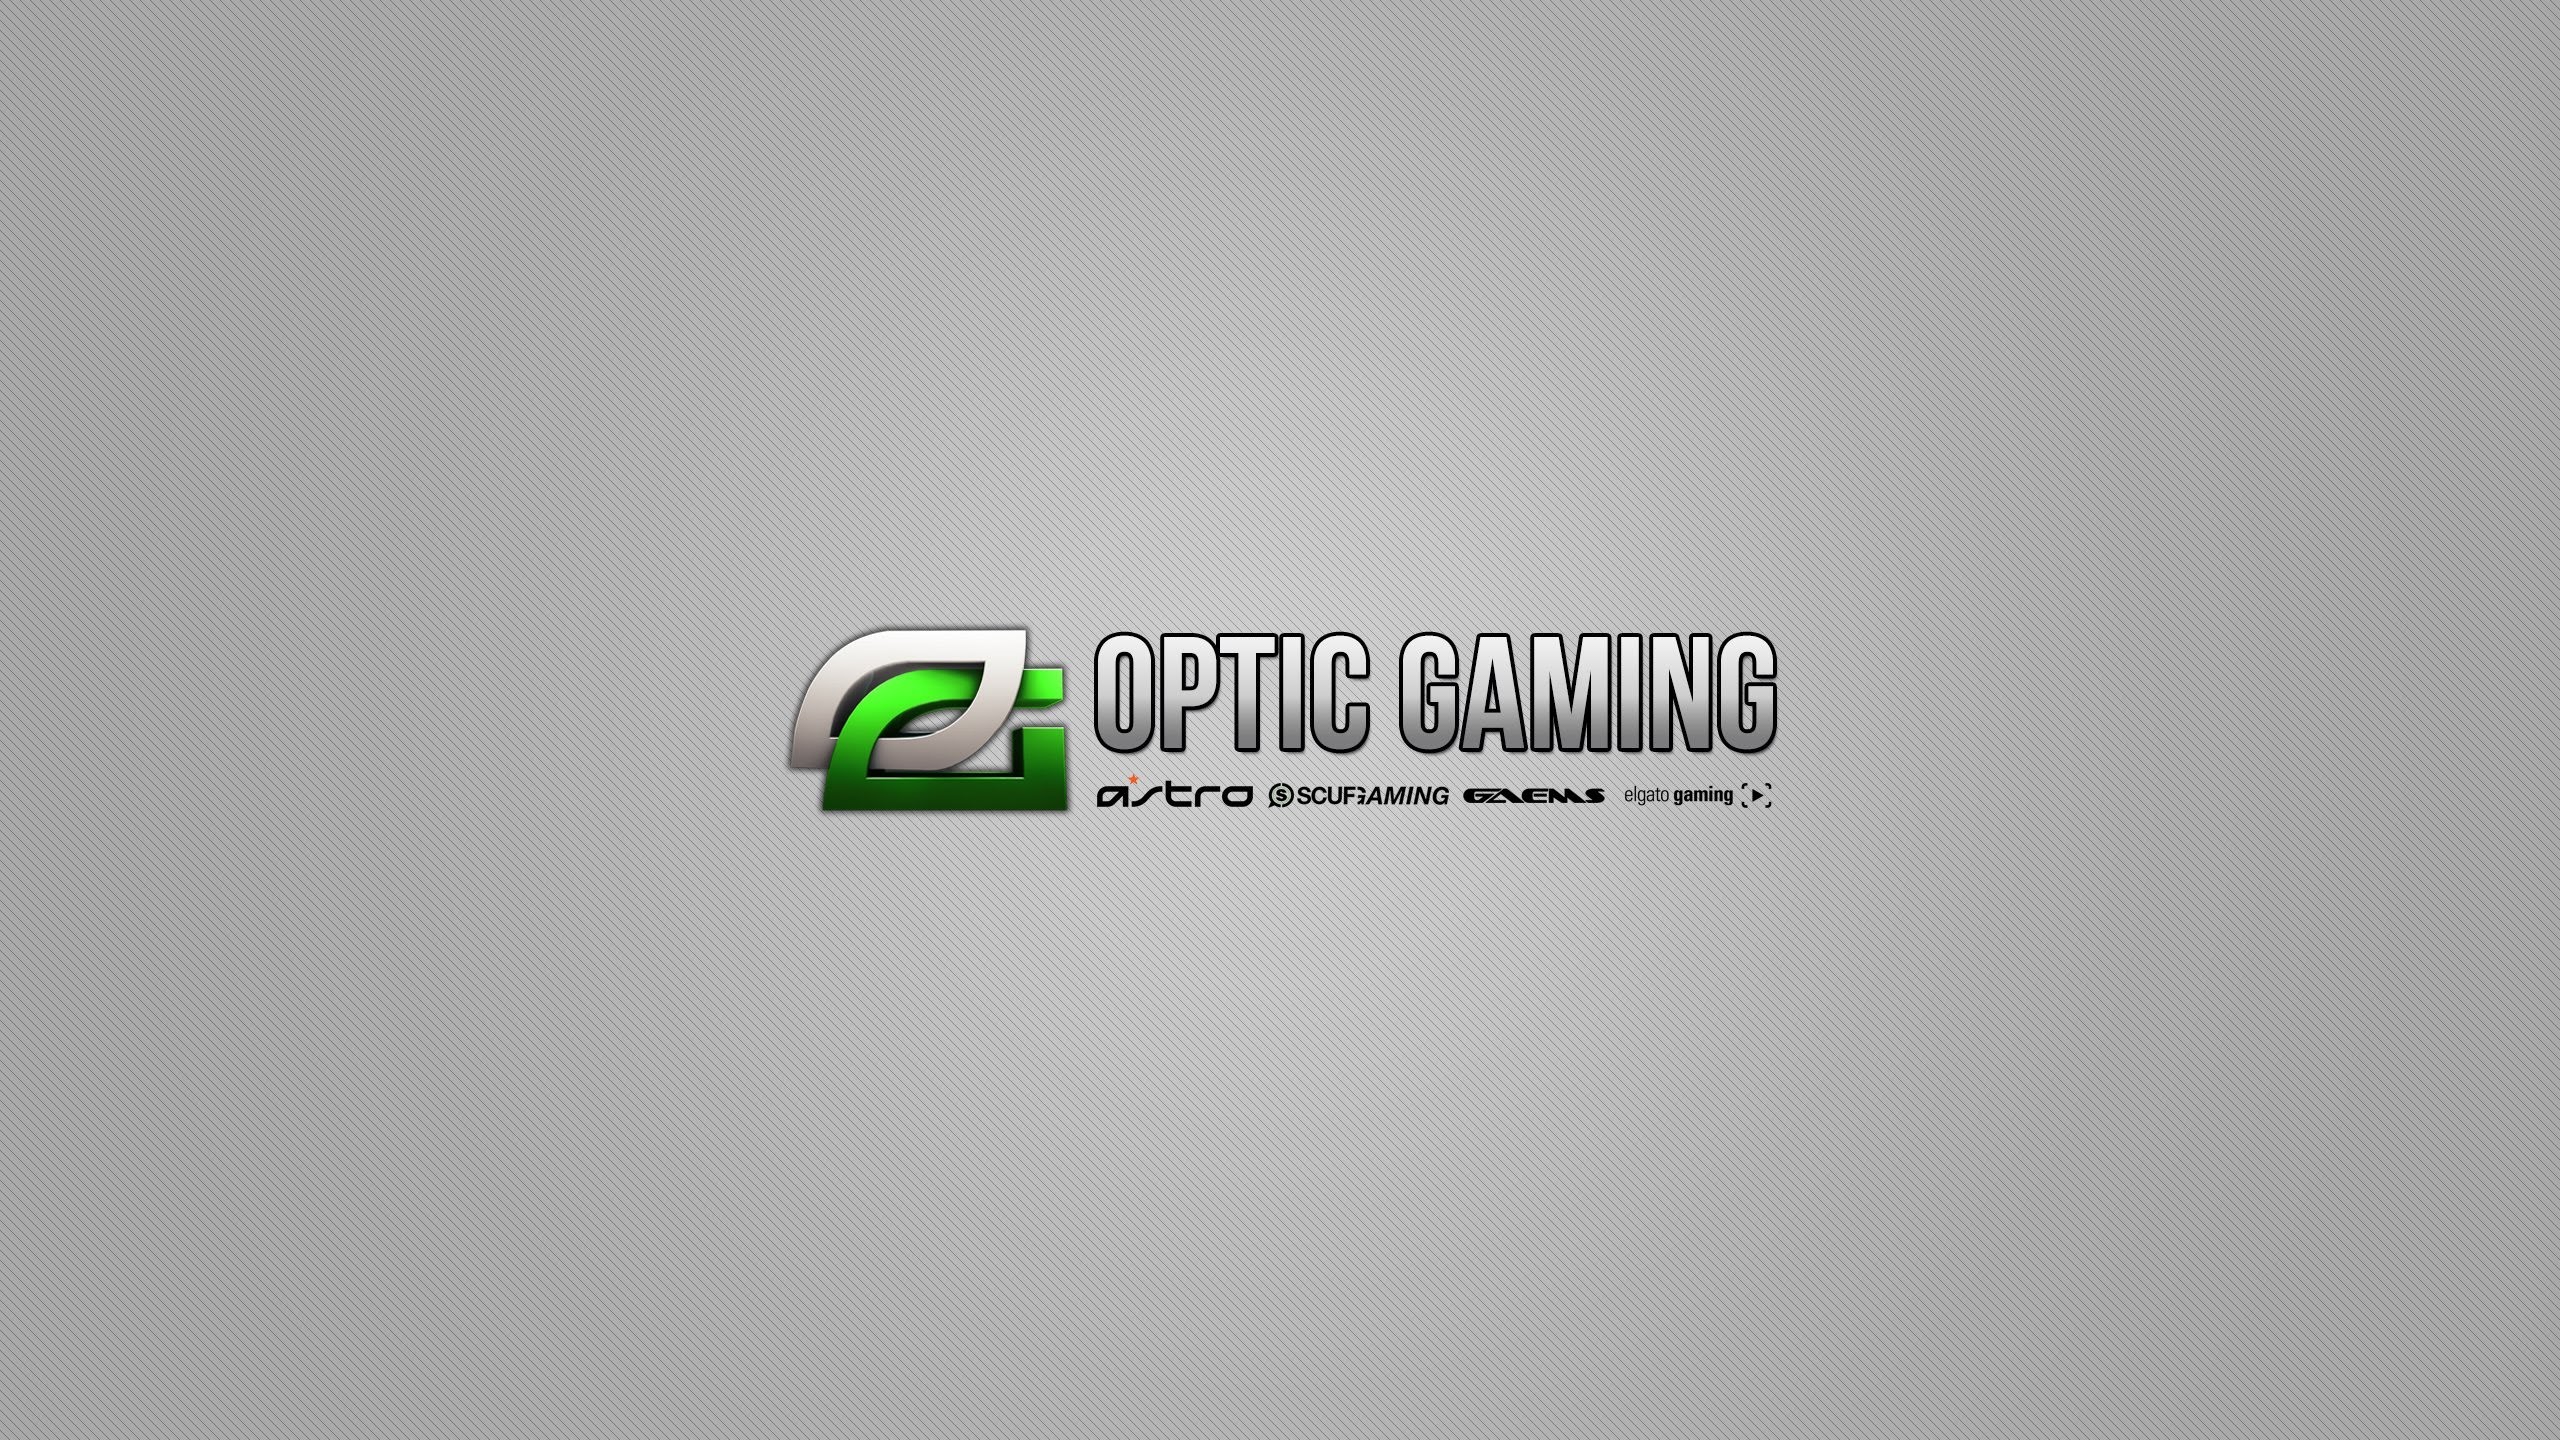 Optic-gaming-wf1012